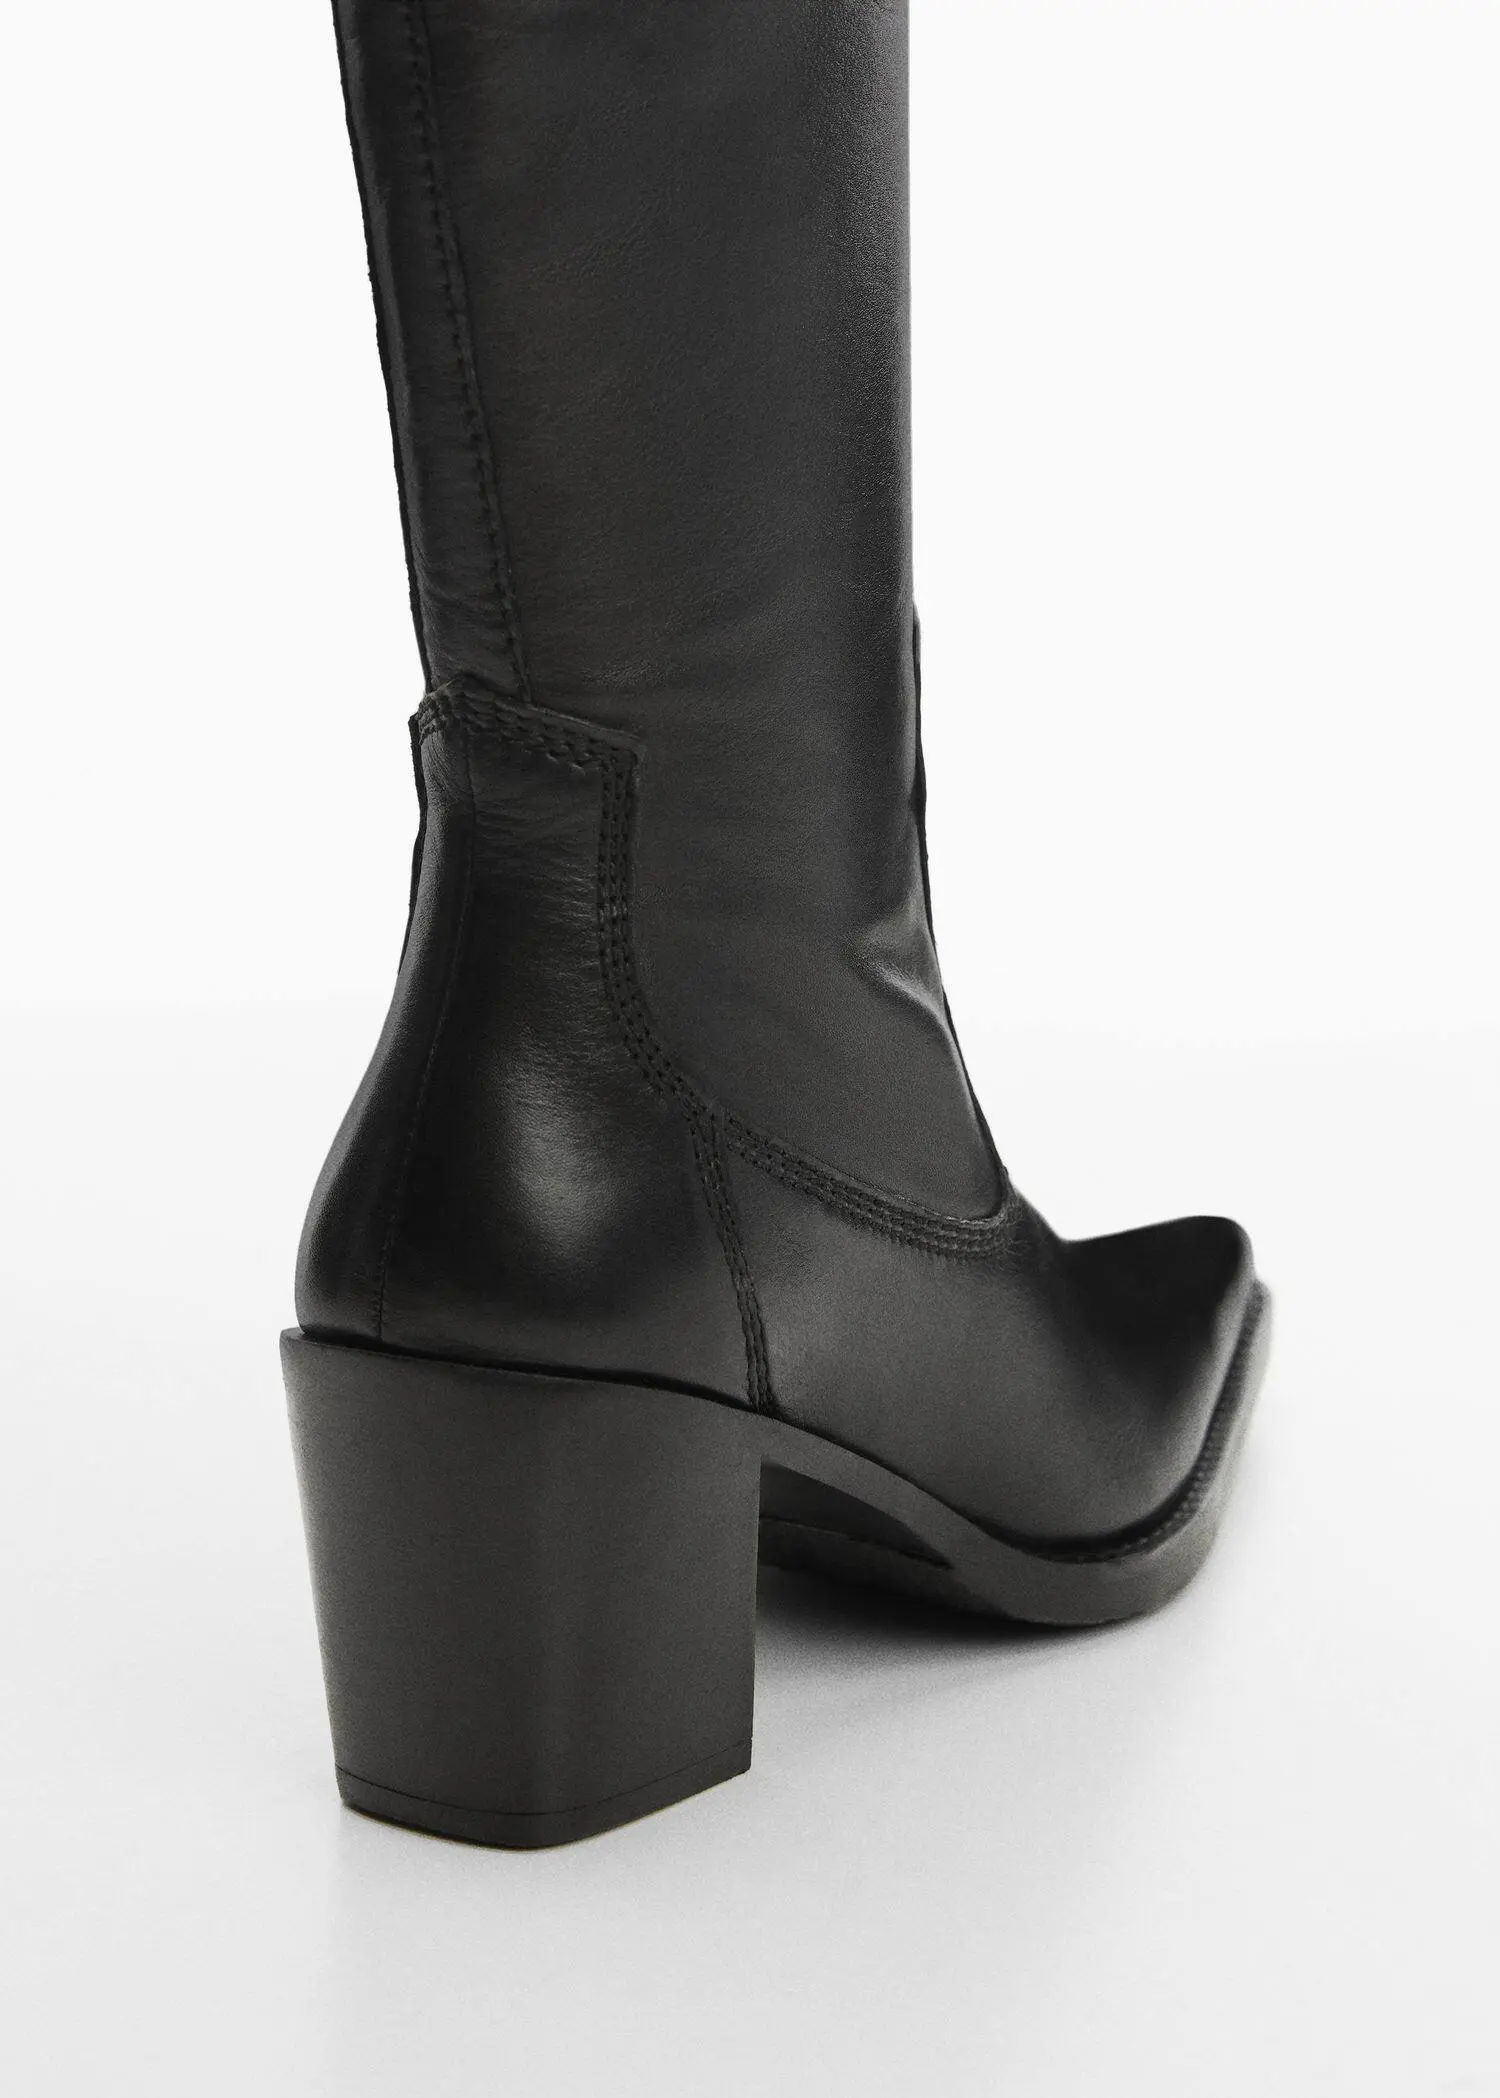 Mango High heel leather boot. 3